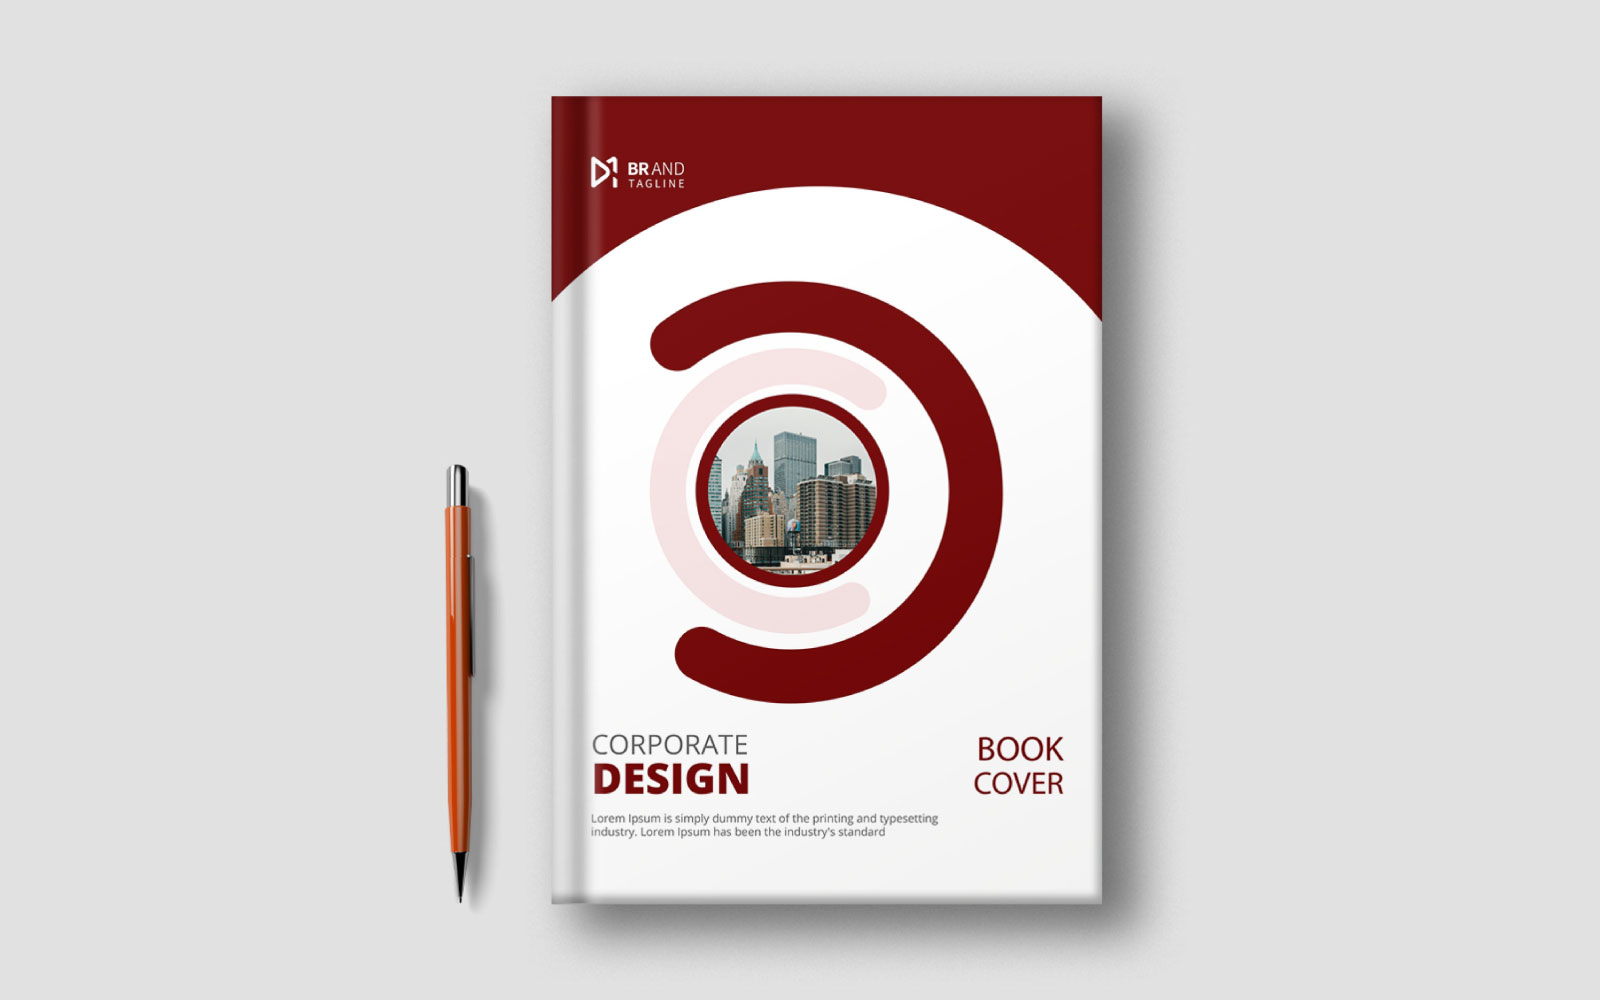 Book cover design template